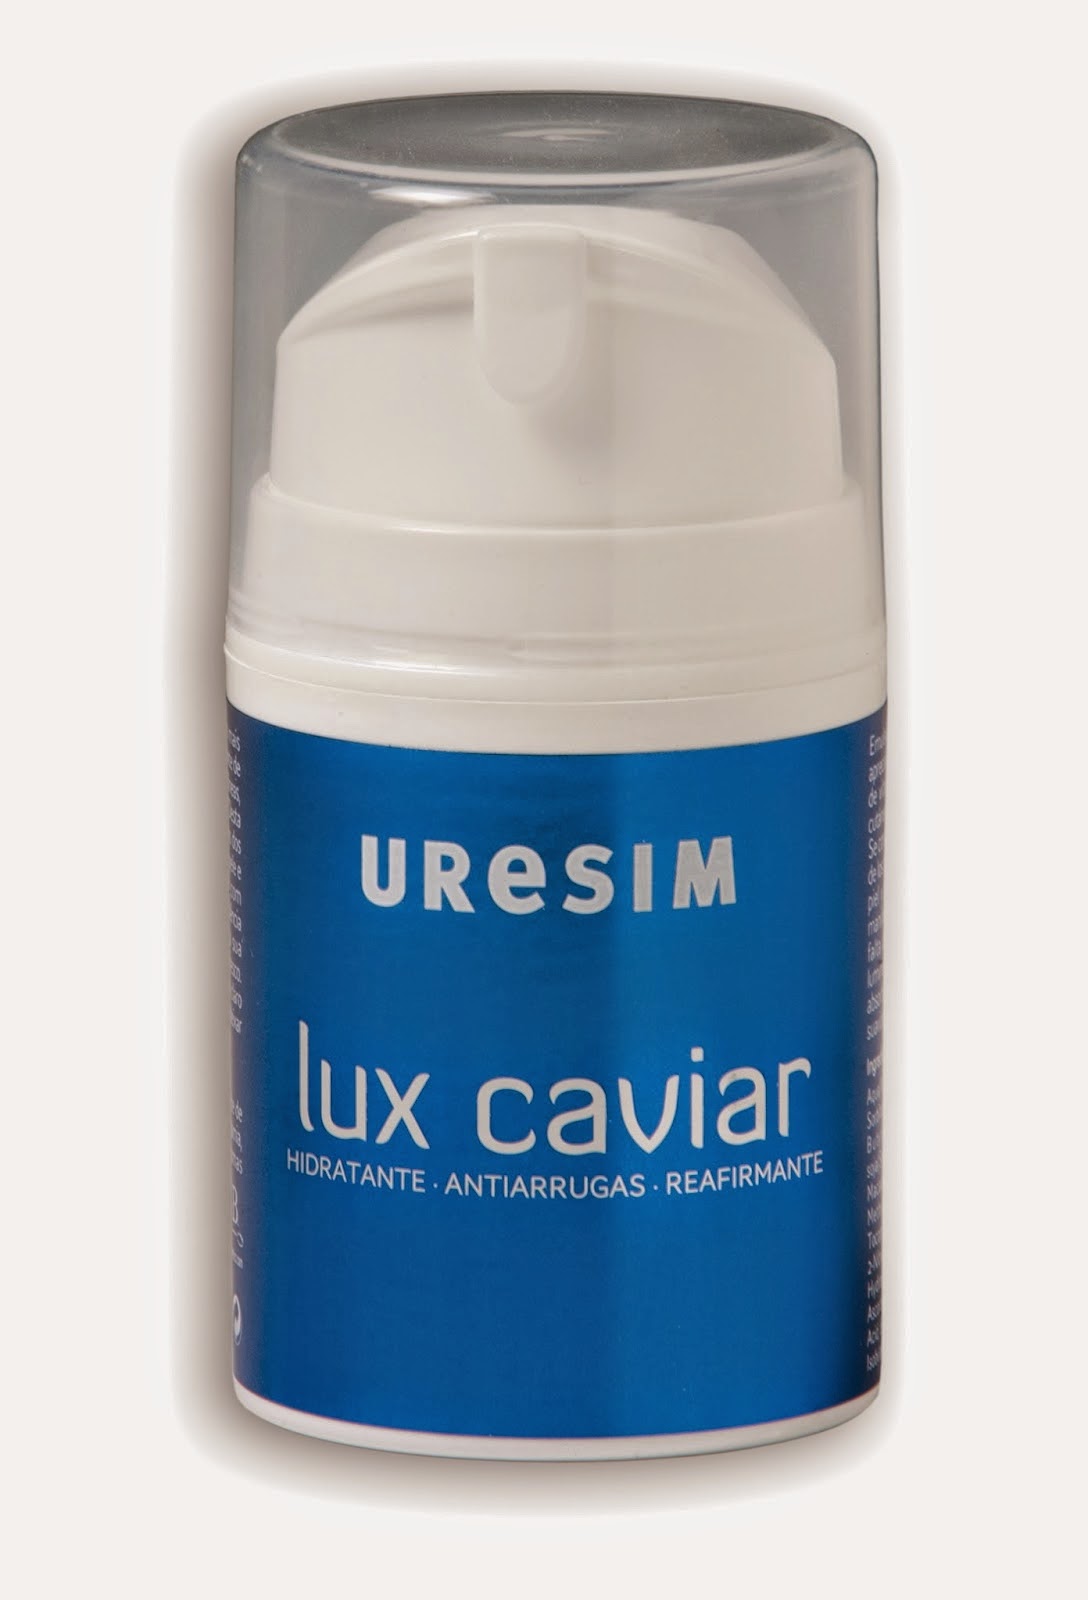 Uresim Lux Caviar, hidratante lowcost